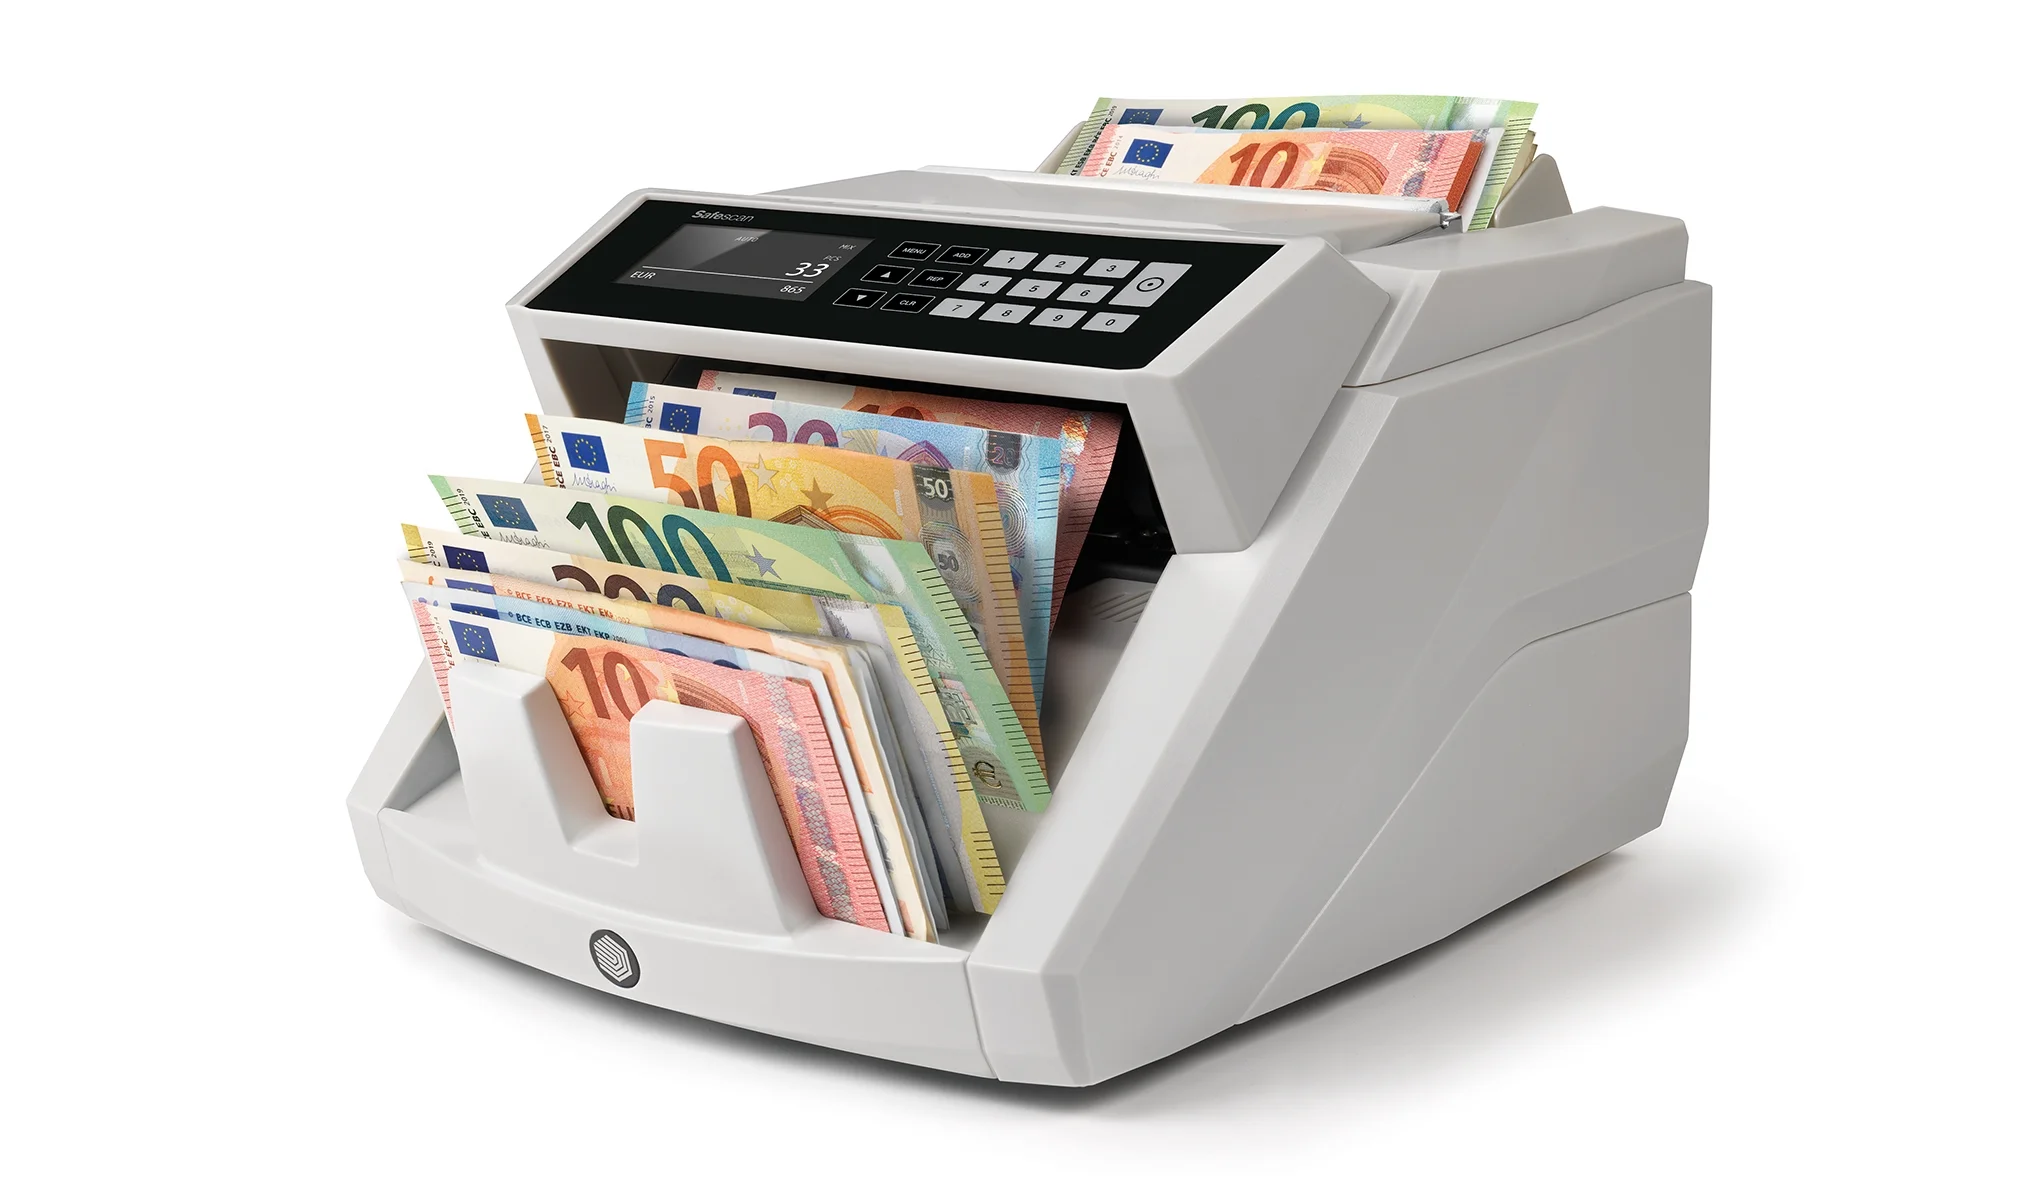 Safescan 2465-S Contadora de Billetes - Puede Contar Billetes de Euro Mezclados - Capacidad hasta 300 Billetes - 1000 Billetes por Minuto - Deteccion de Billetes Falsos